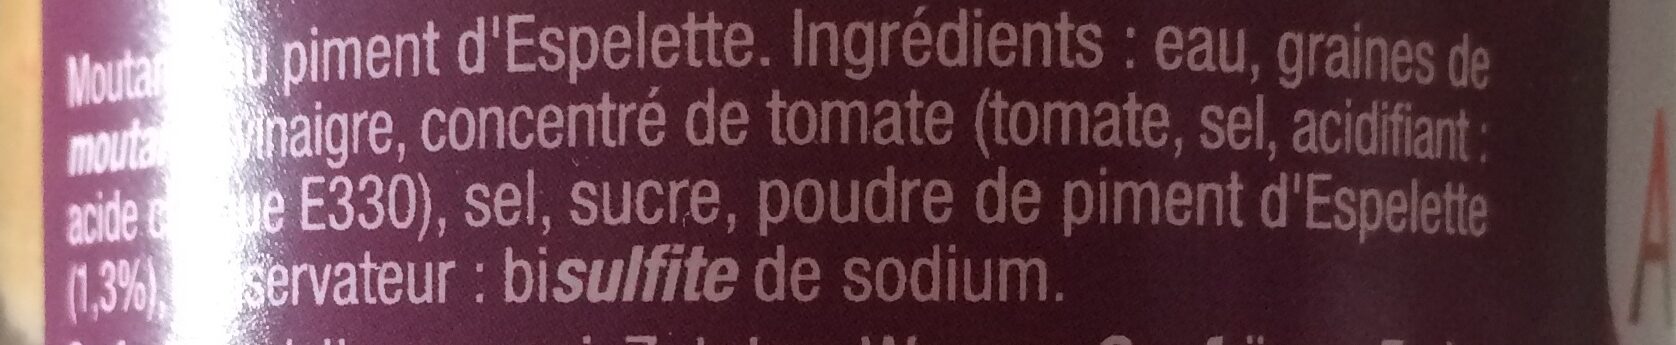 Moutarde au Piment d'Espelette - Ingrédients